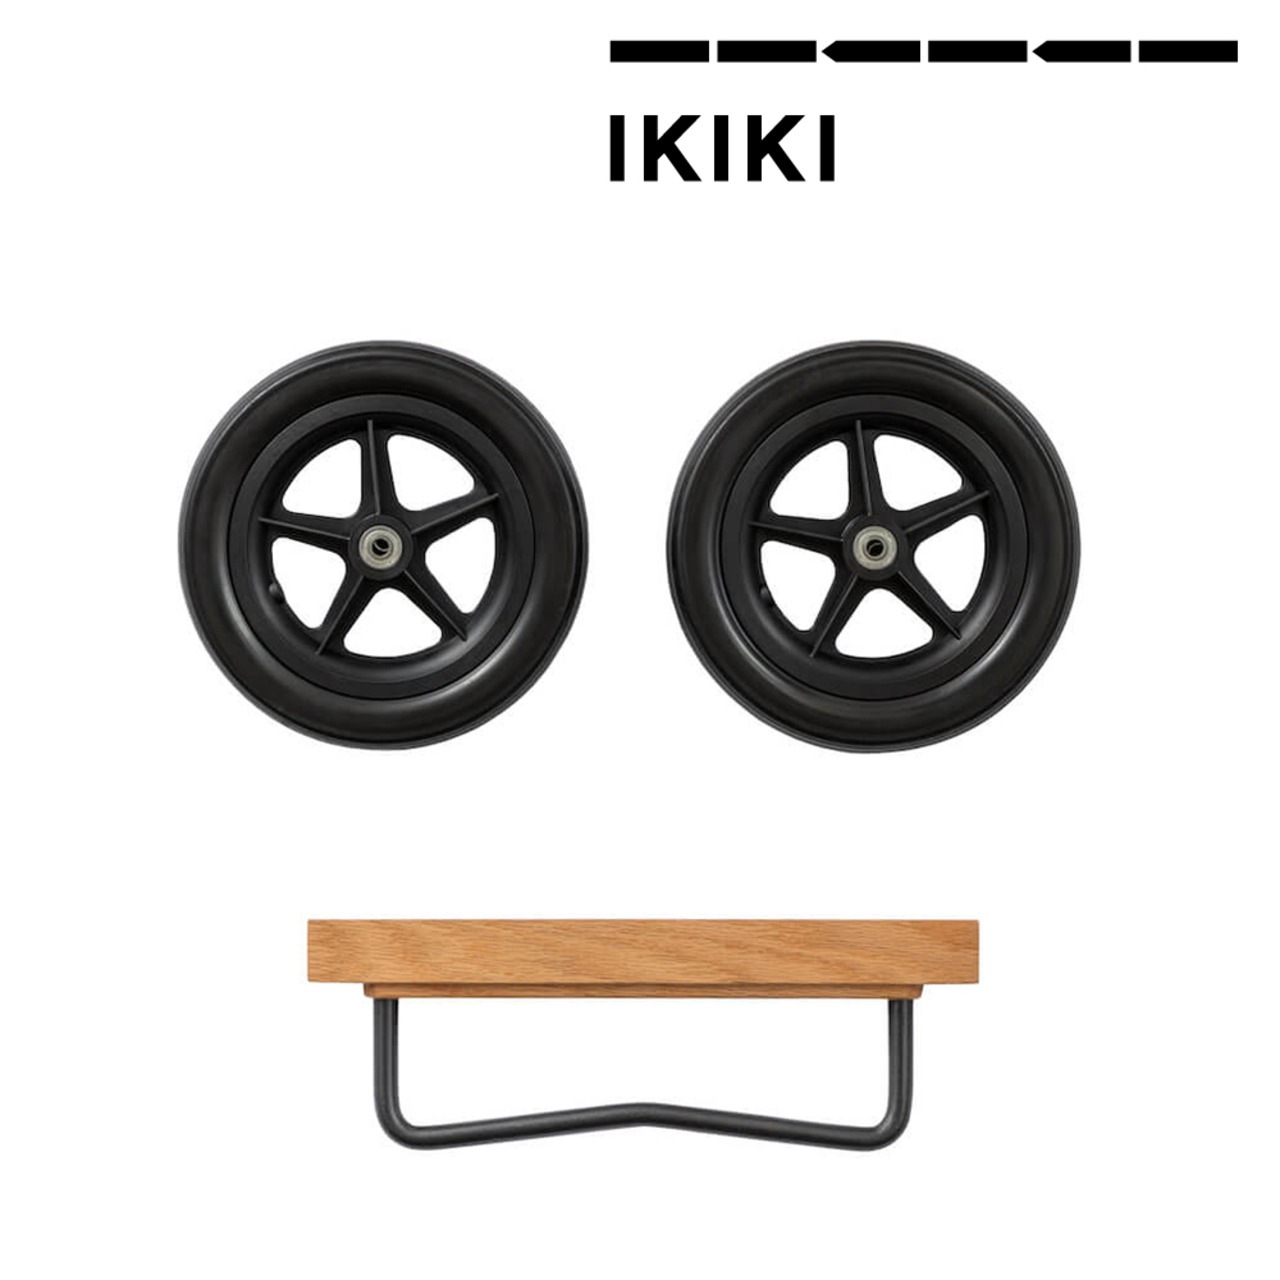 IKIKI(イキキ) ホイール セット オーク 天然木材 木製 機能コンテナ